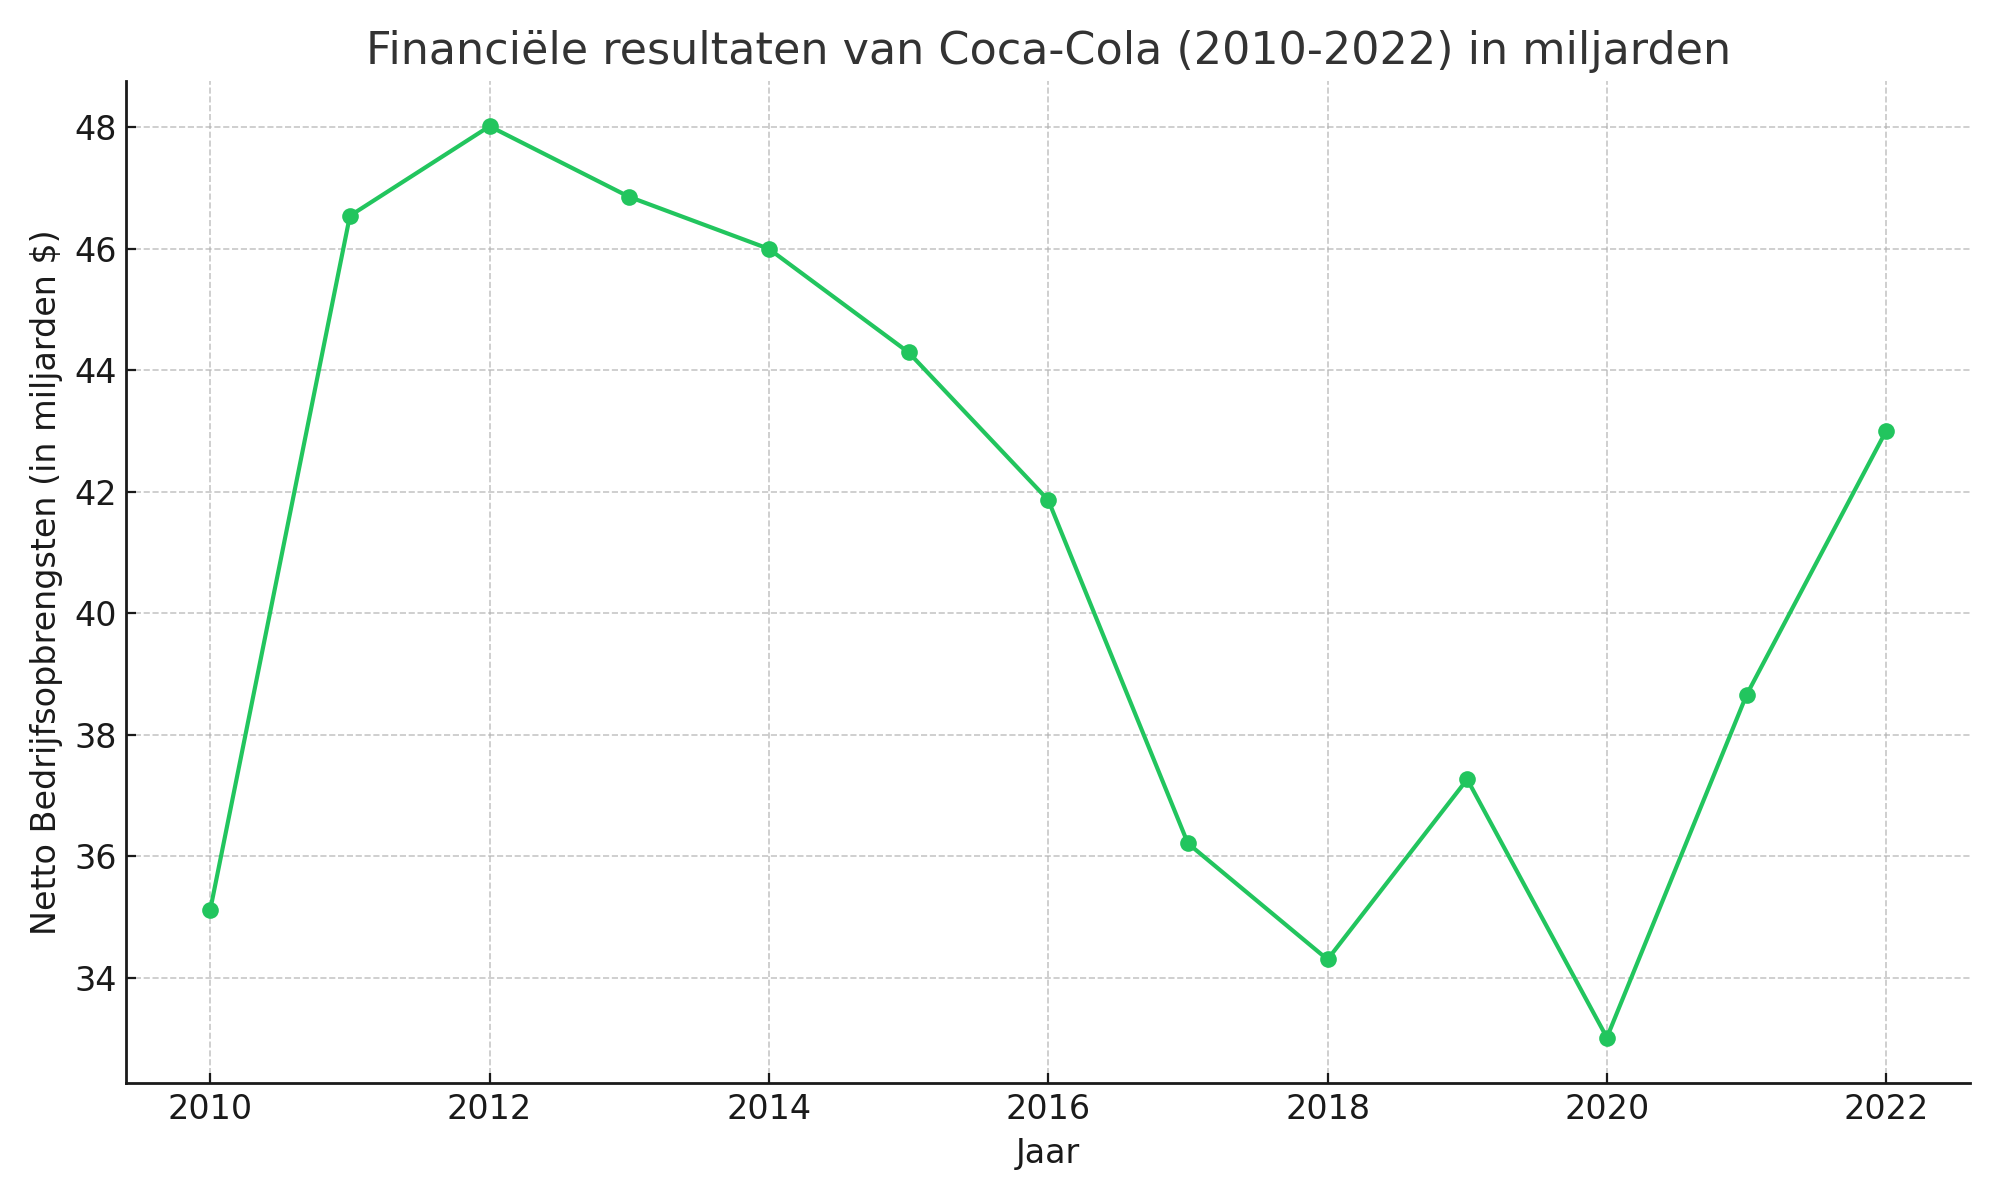 Financiele resultaten van Coca Cola in miljarden